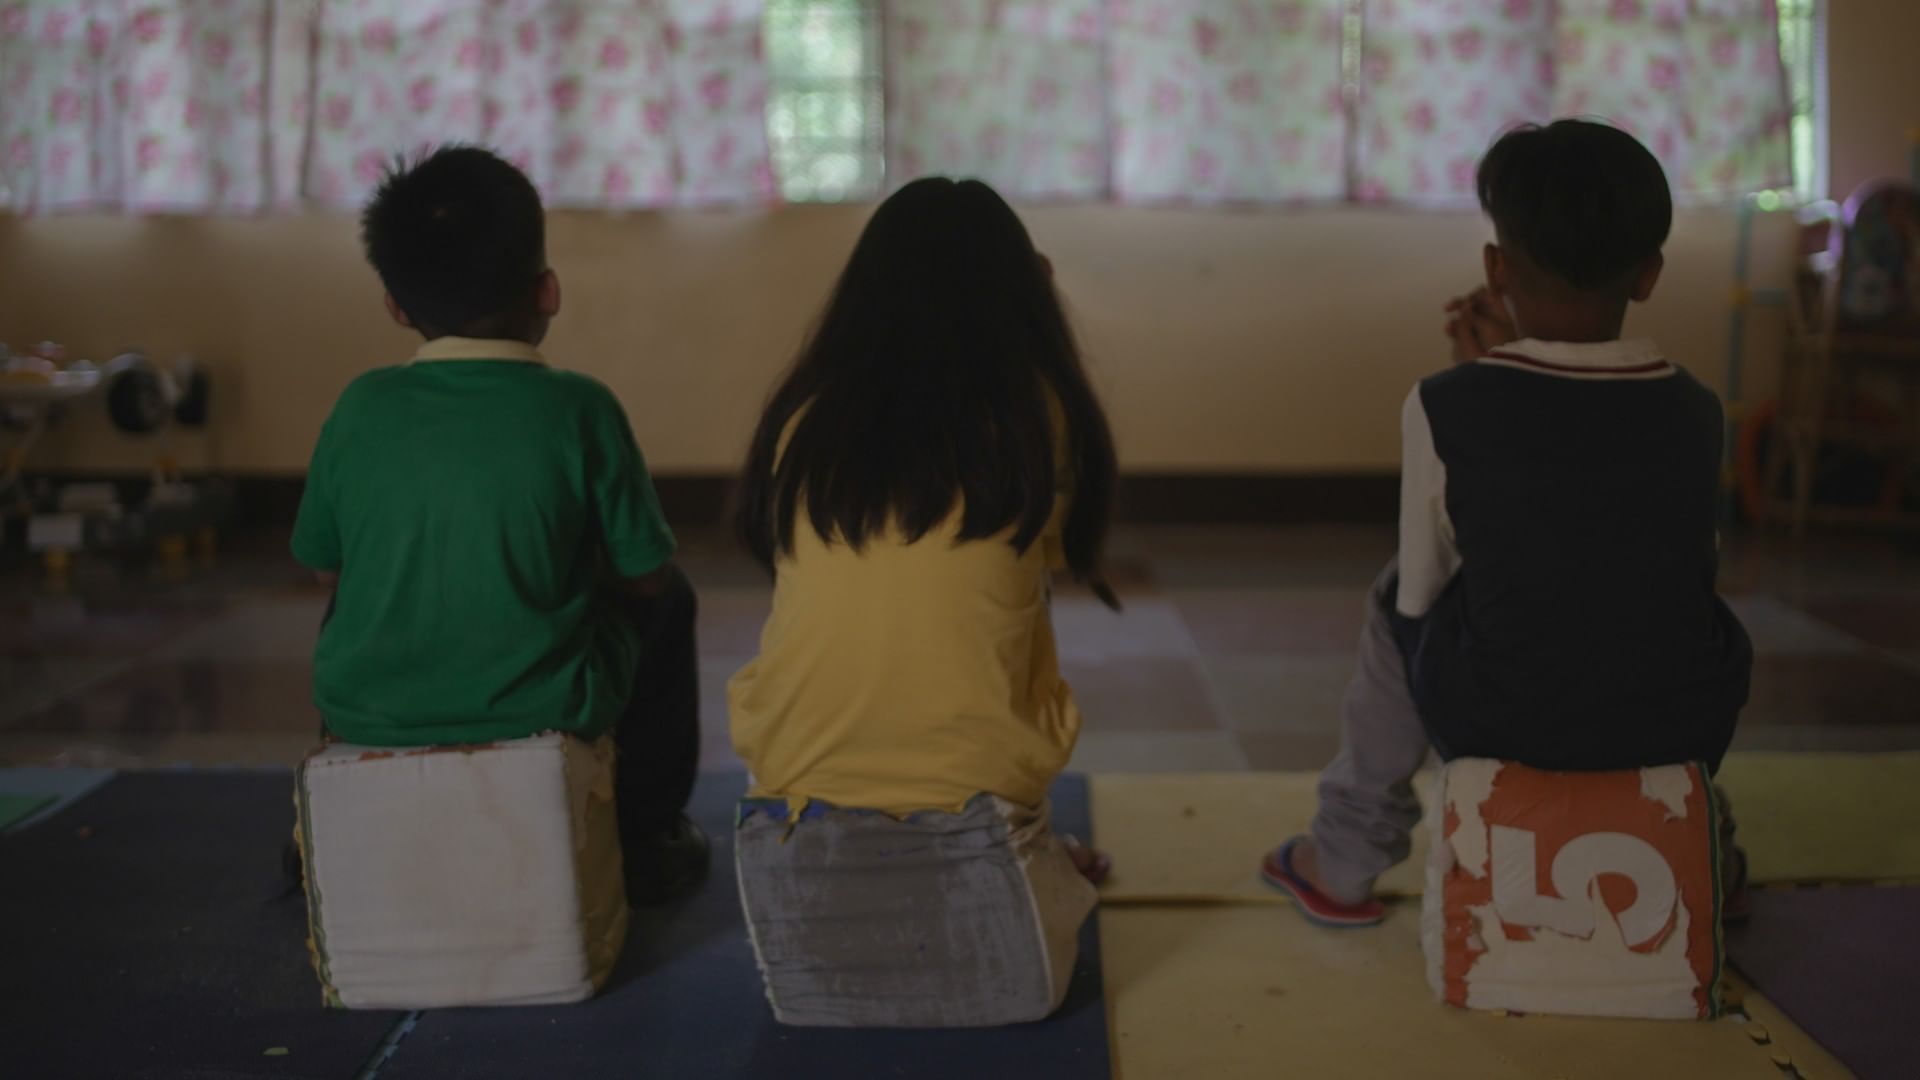 Philippinen – Eltern missbrauchen Kinder online